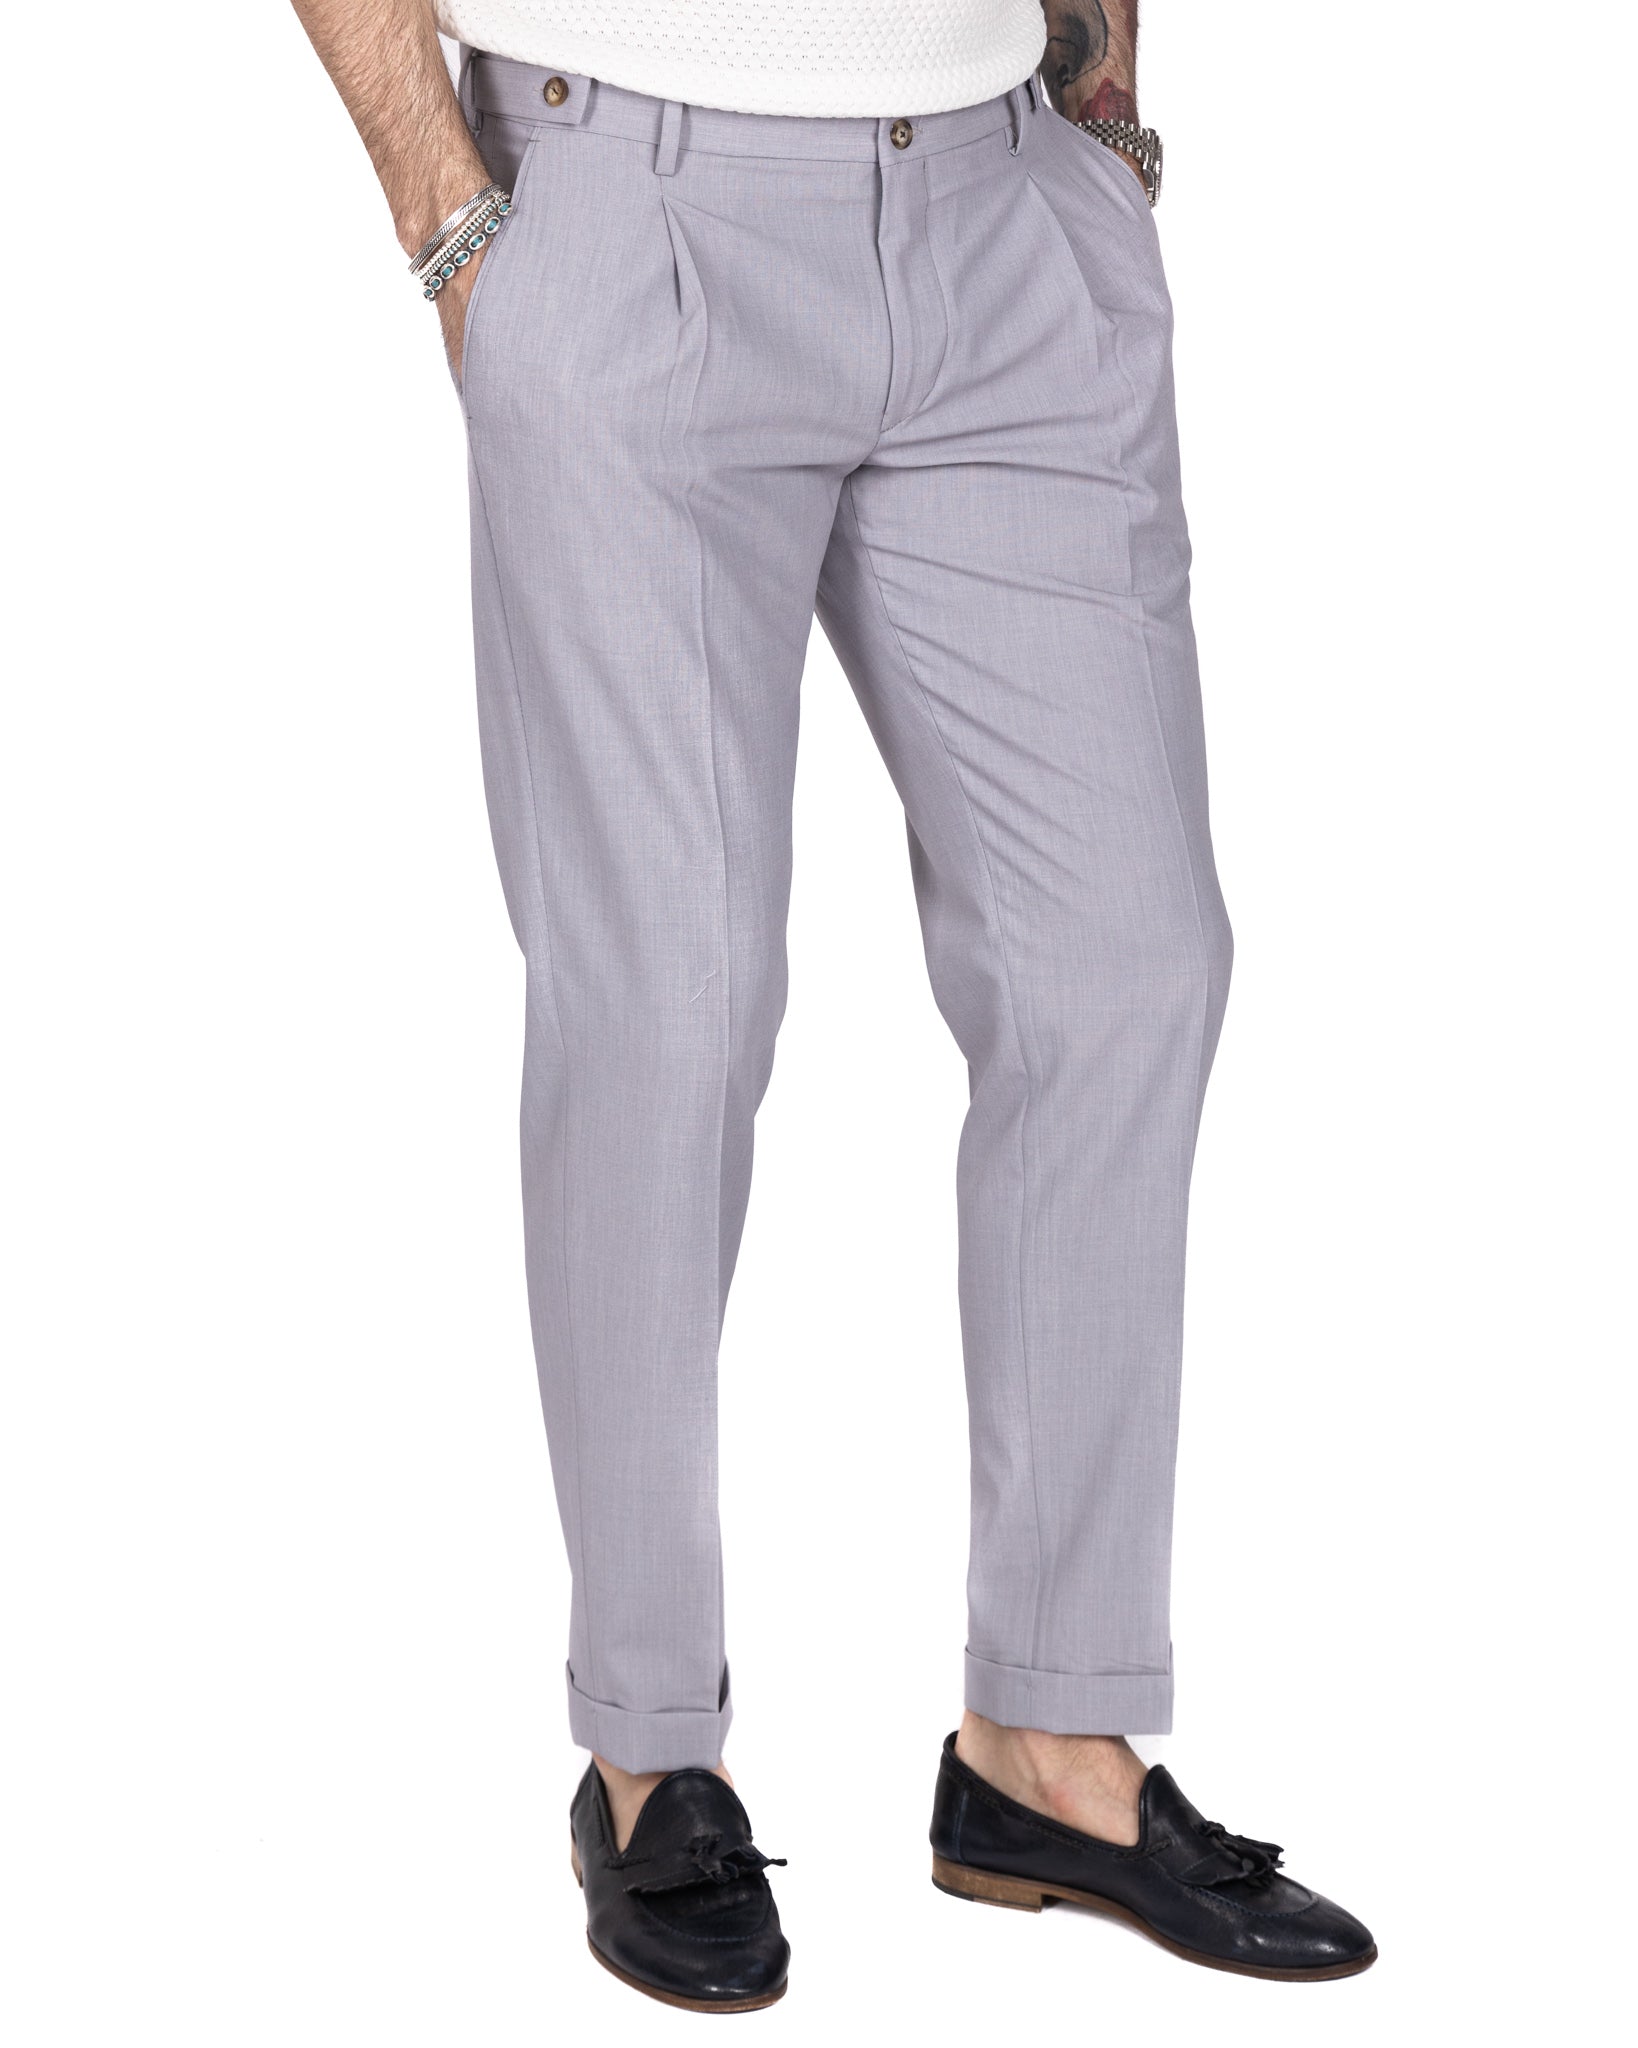 Milano - pantalone basic grigio chiaro